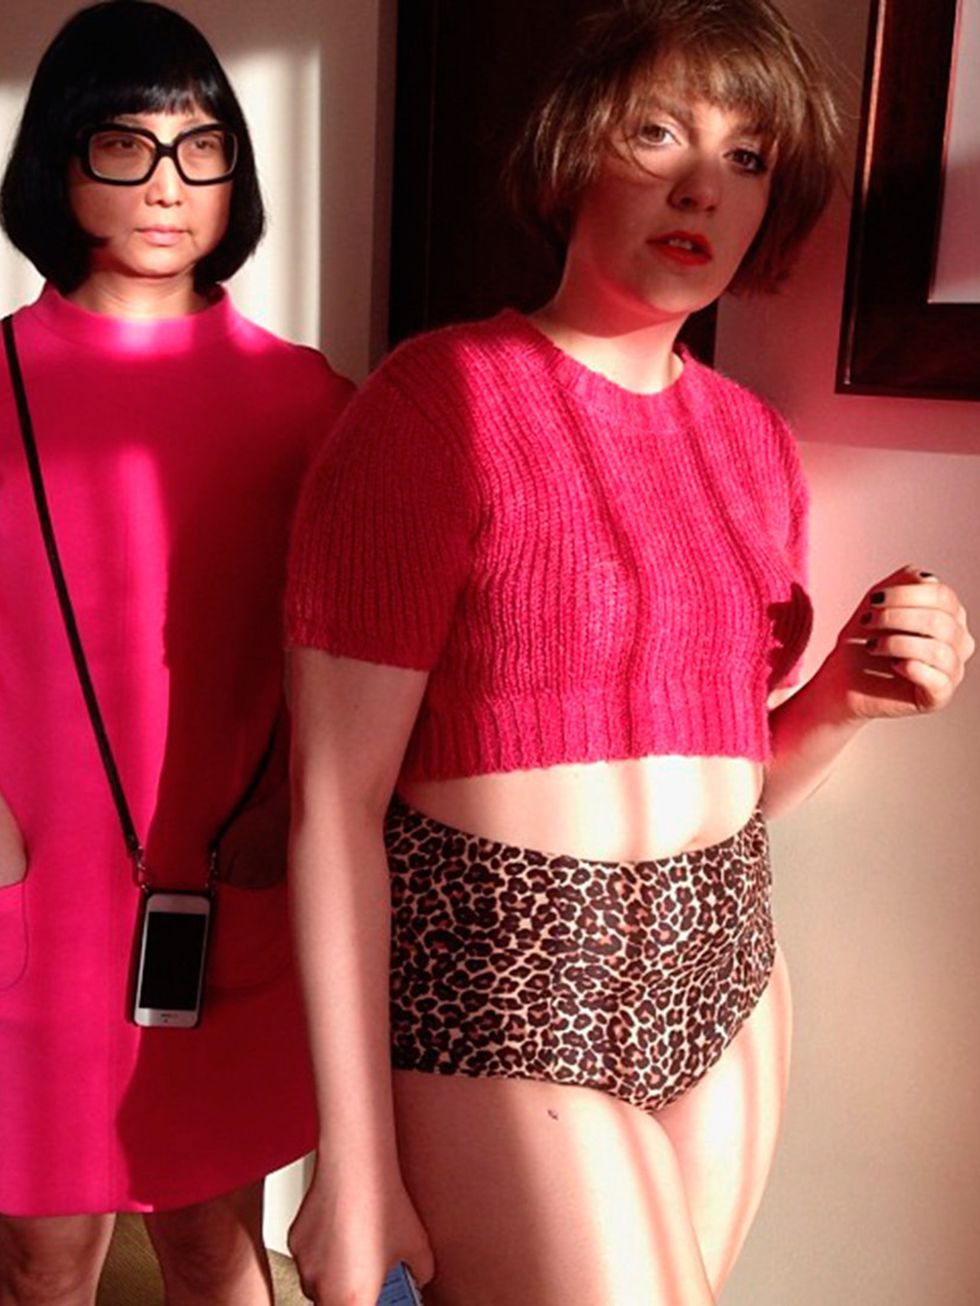 Lena-Dunham-book-cover-shoot-pink-instagram